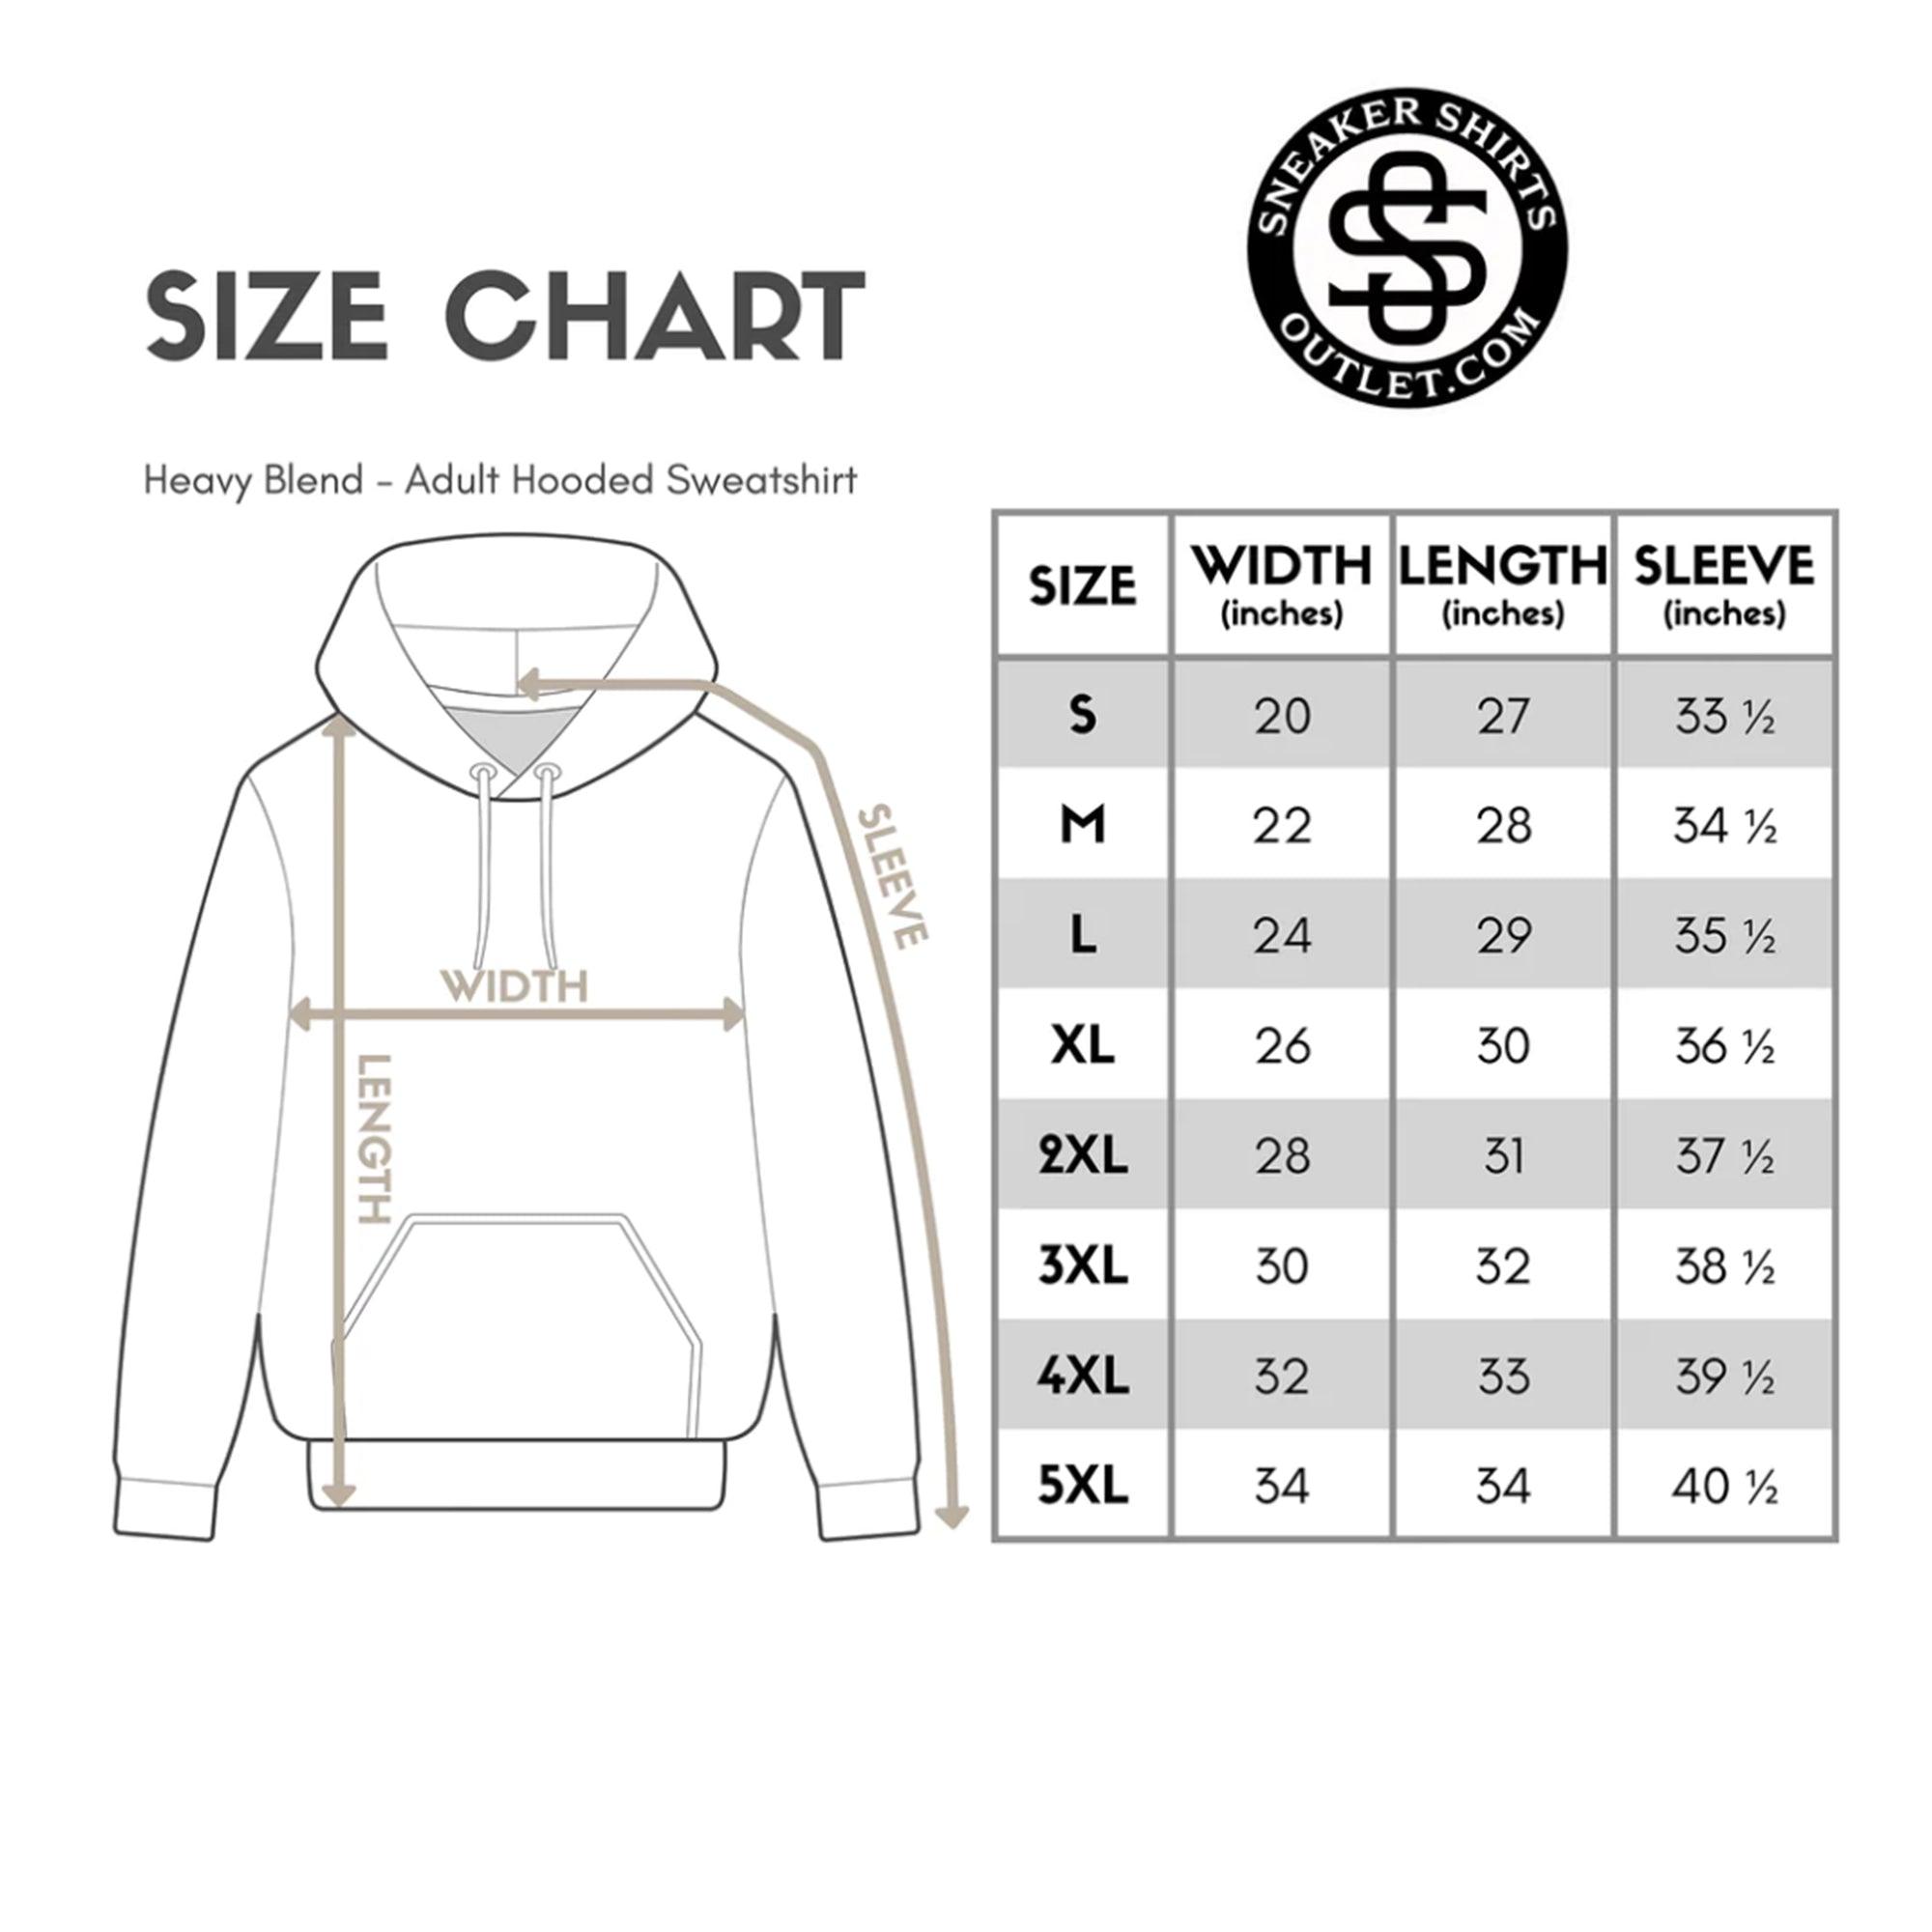 Adidas Yeezy Boost 350 V2 Slate Hoodie - Heartbreaker Bear - Sneaker Shirts Outlet